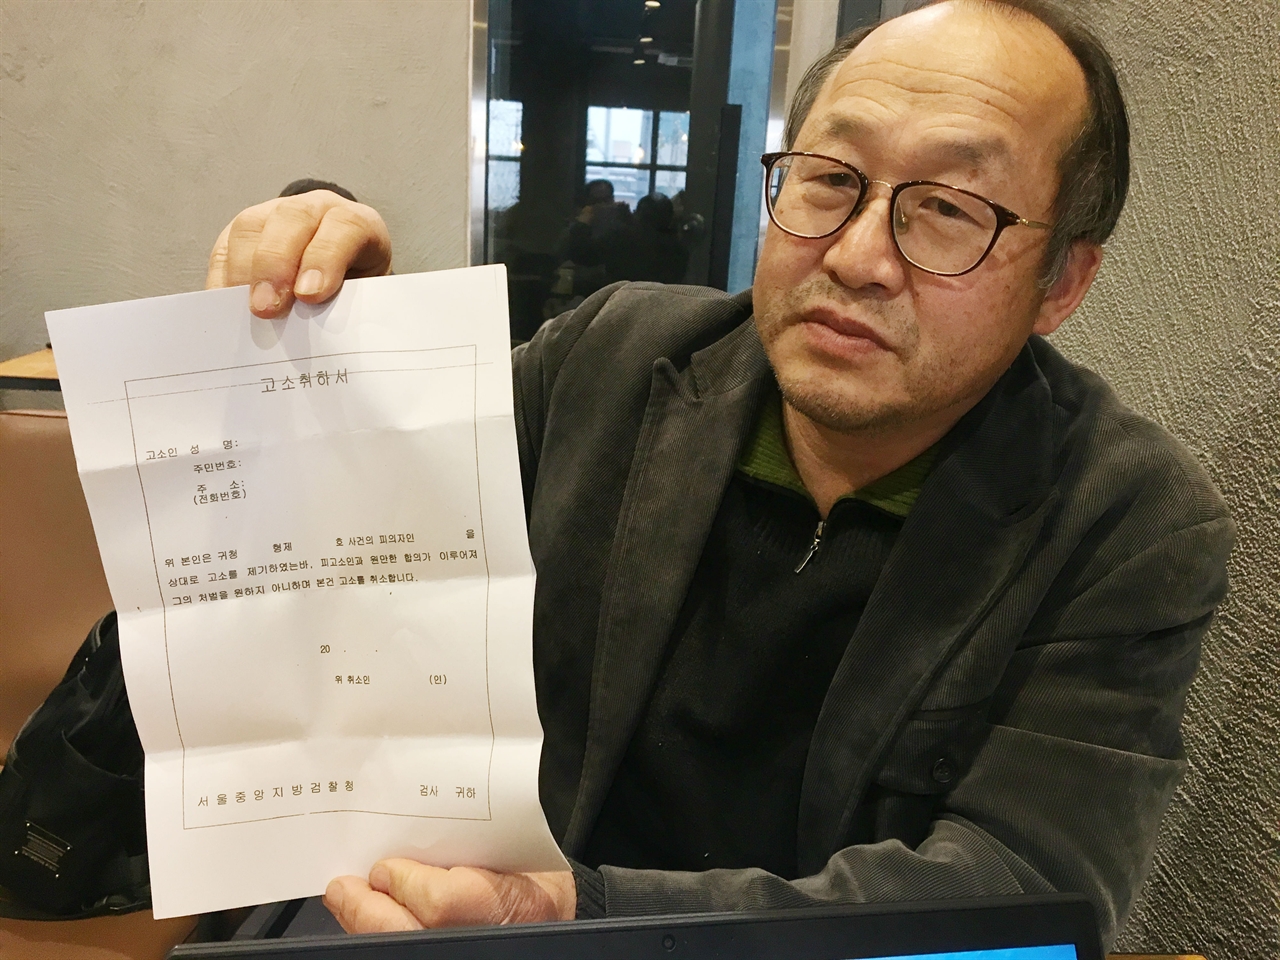 18일, 서울 마포구 합정동에서 만난 KAL 858기 가족지원단의 총괄팀장 신성국 신부가 테러범 김현희씨 고소 취하서를 보여주고 있다.